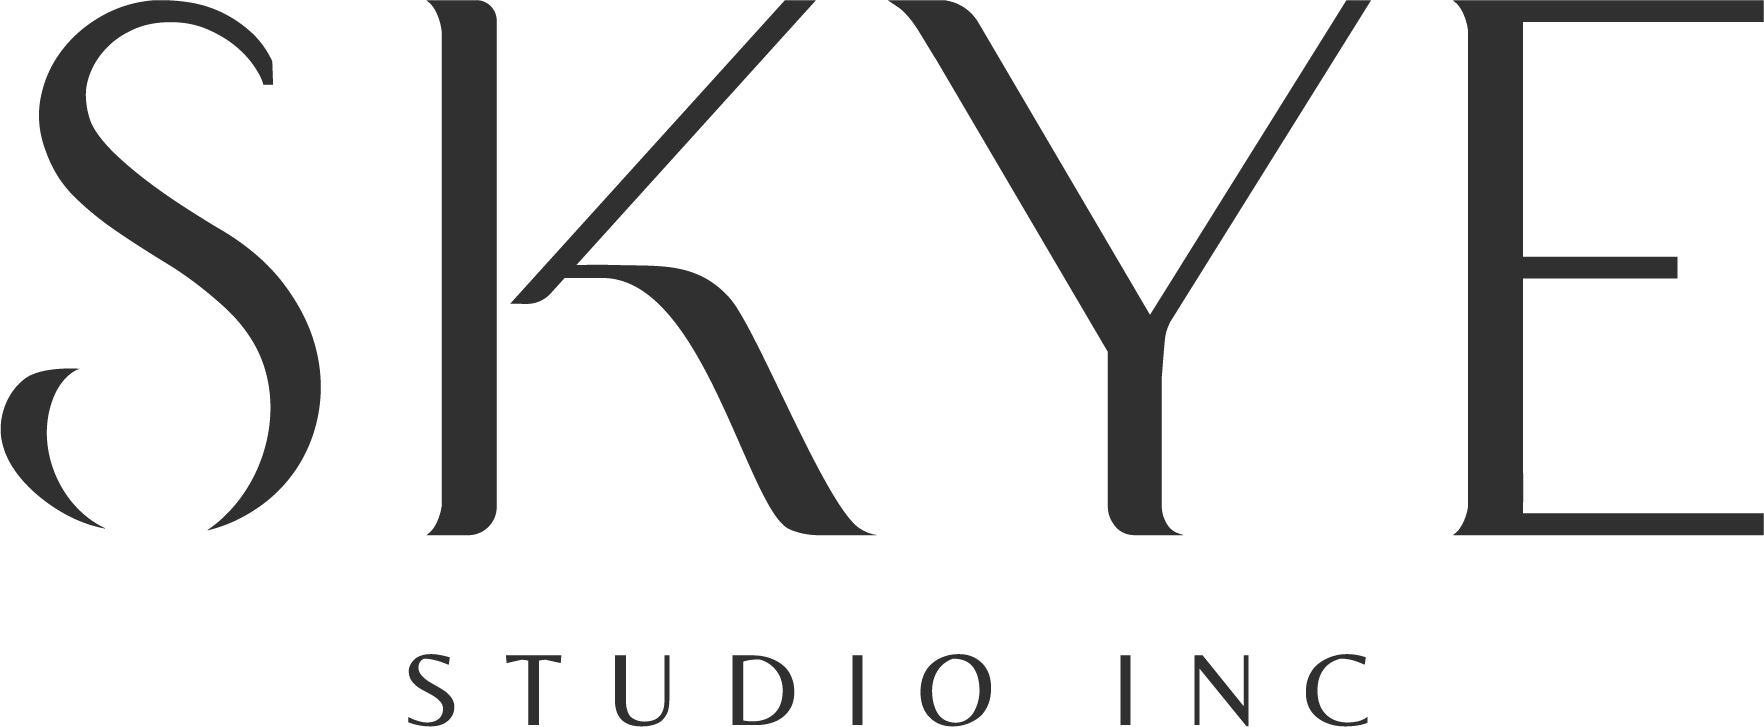 Skye Studio